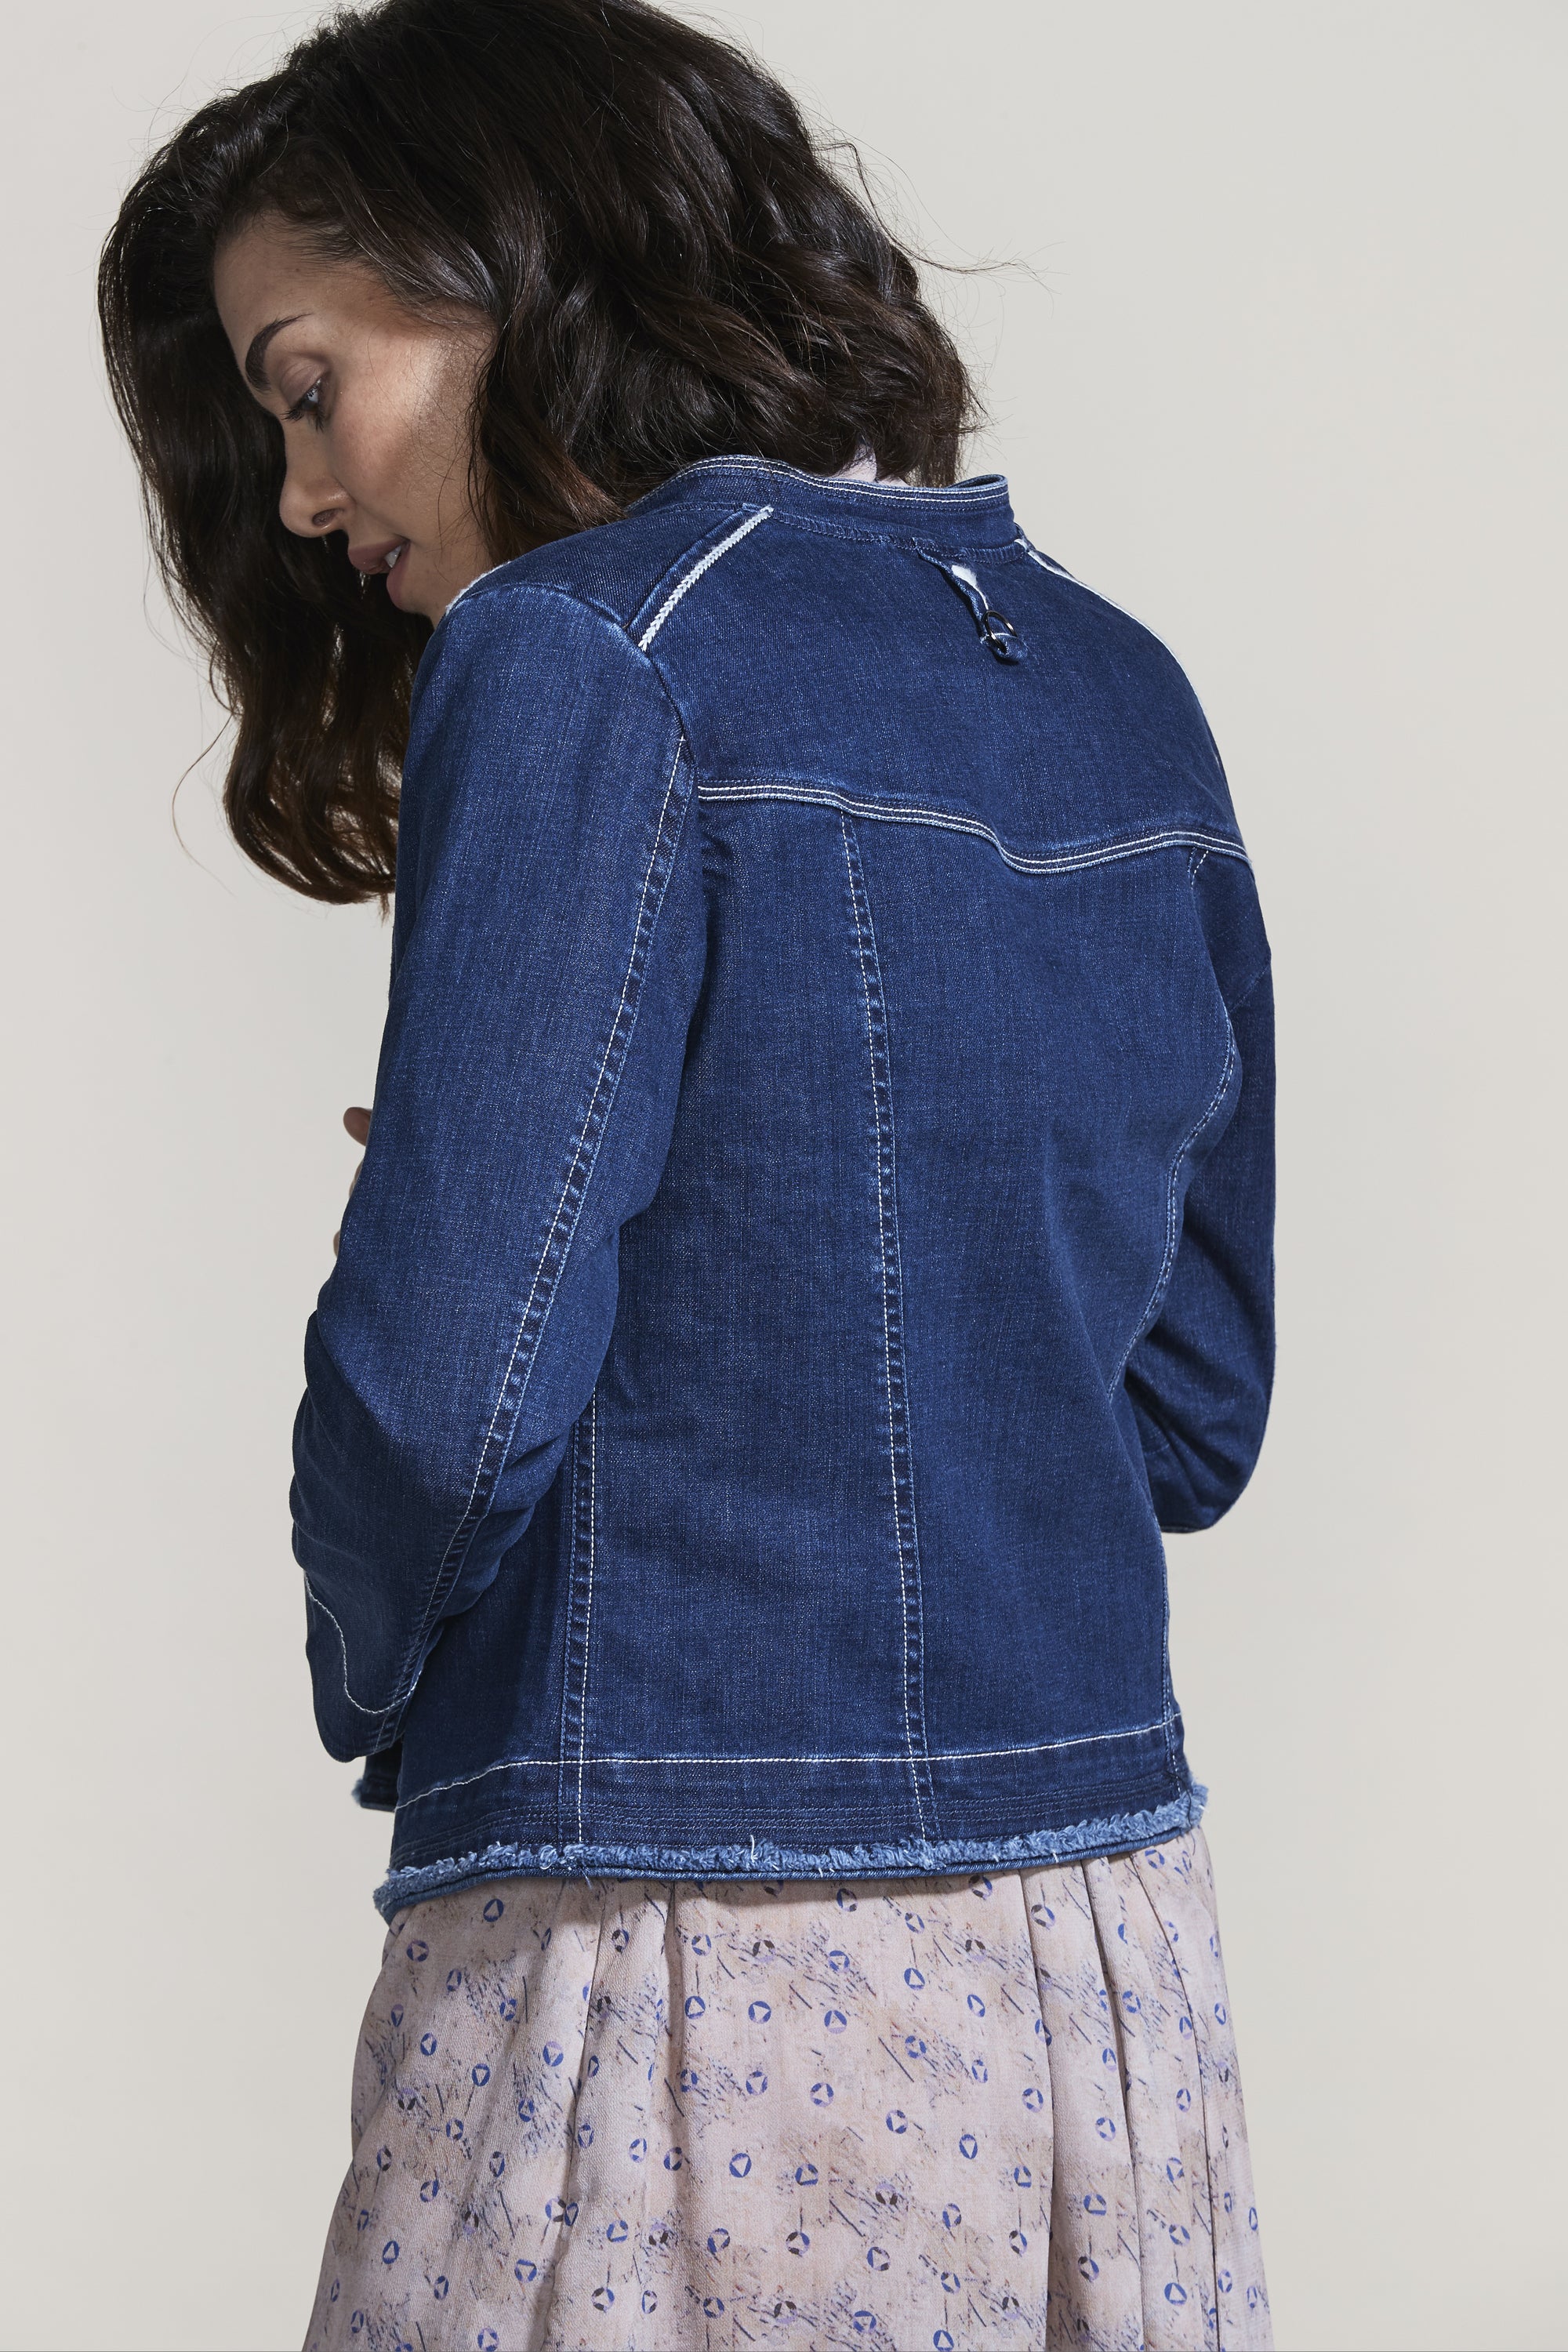 Sydney Jacket – Lania The Label